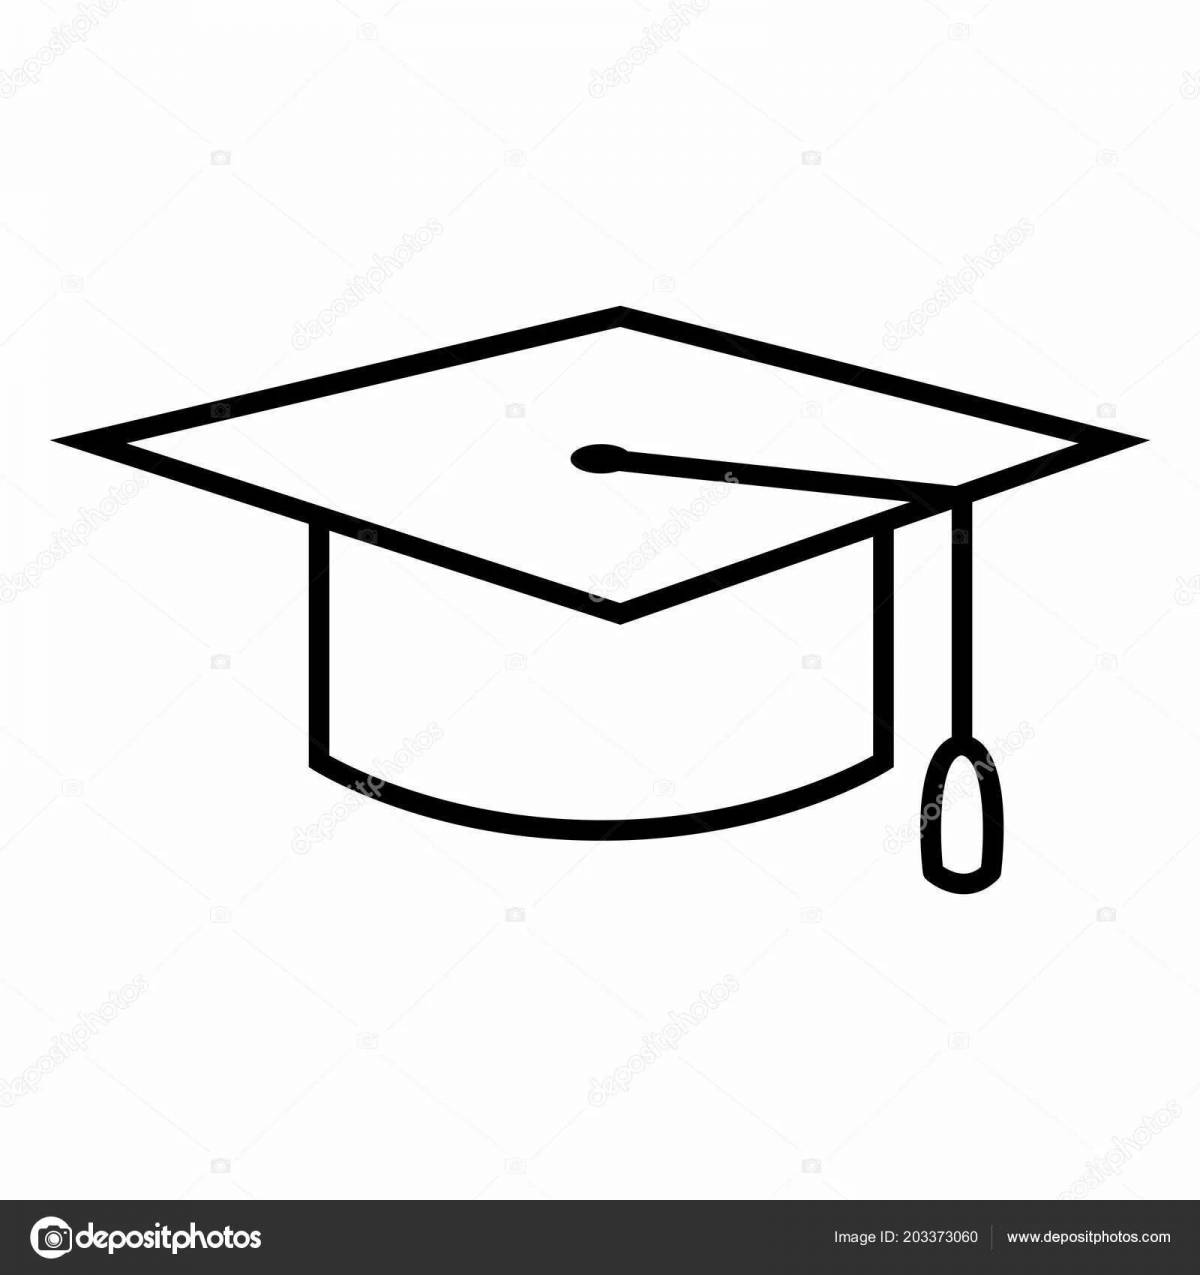 Graduate cap #1